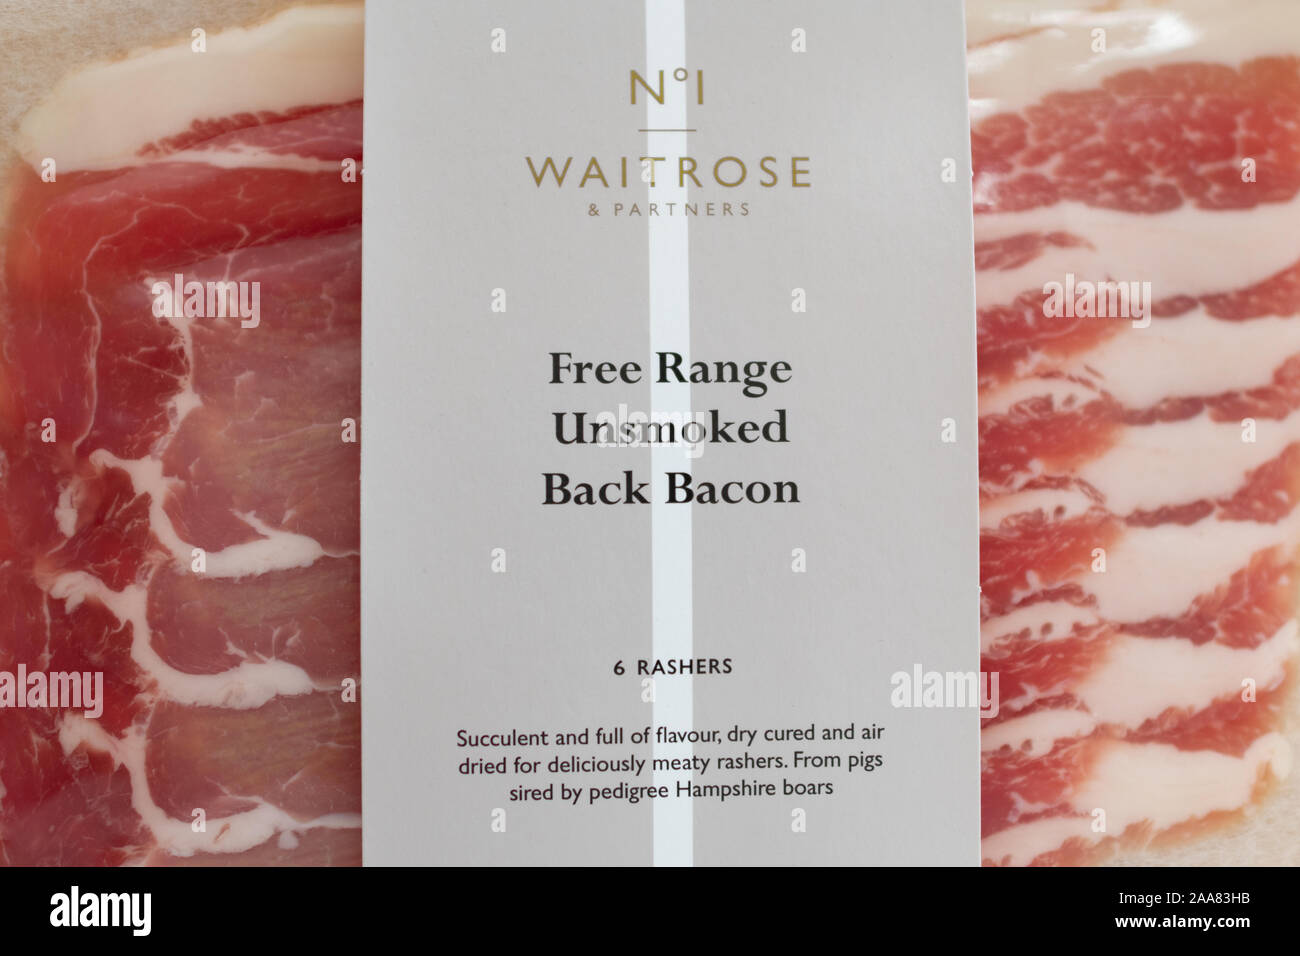 Free Range bacon - pack de Waitrose bacon de dos non fumée - UK Banque D'Images